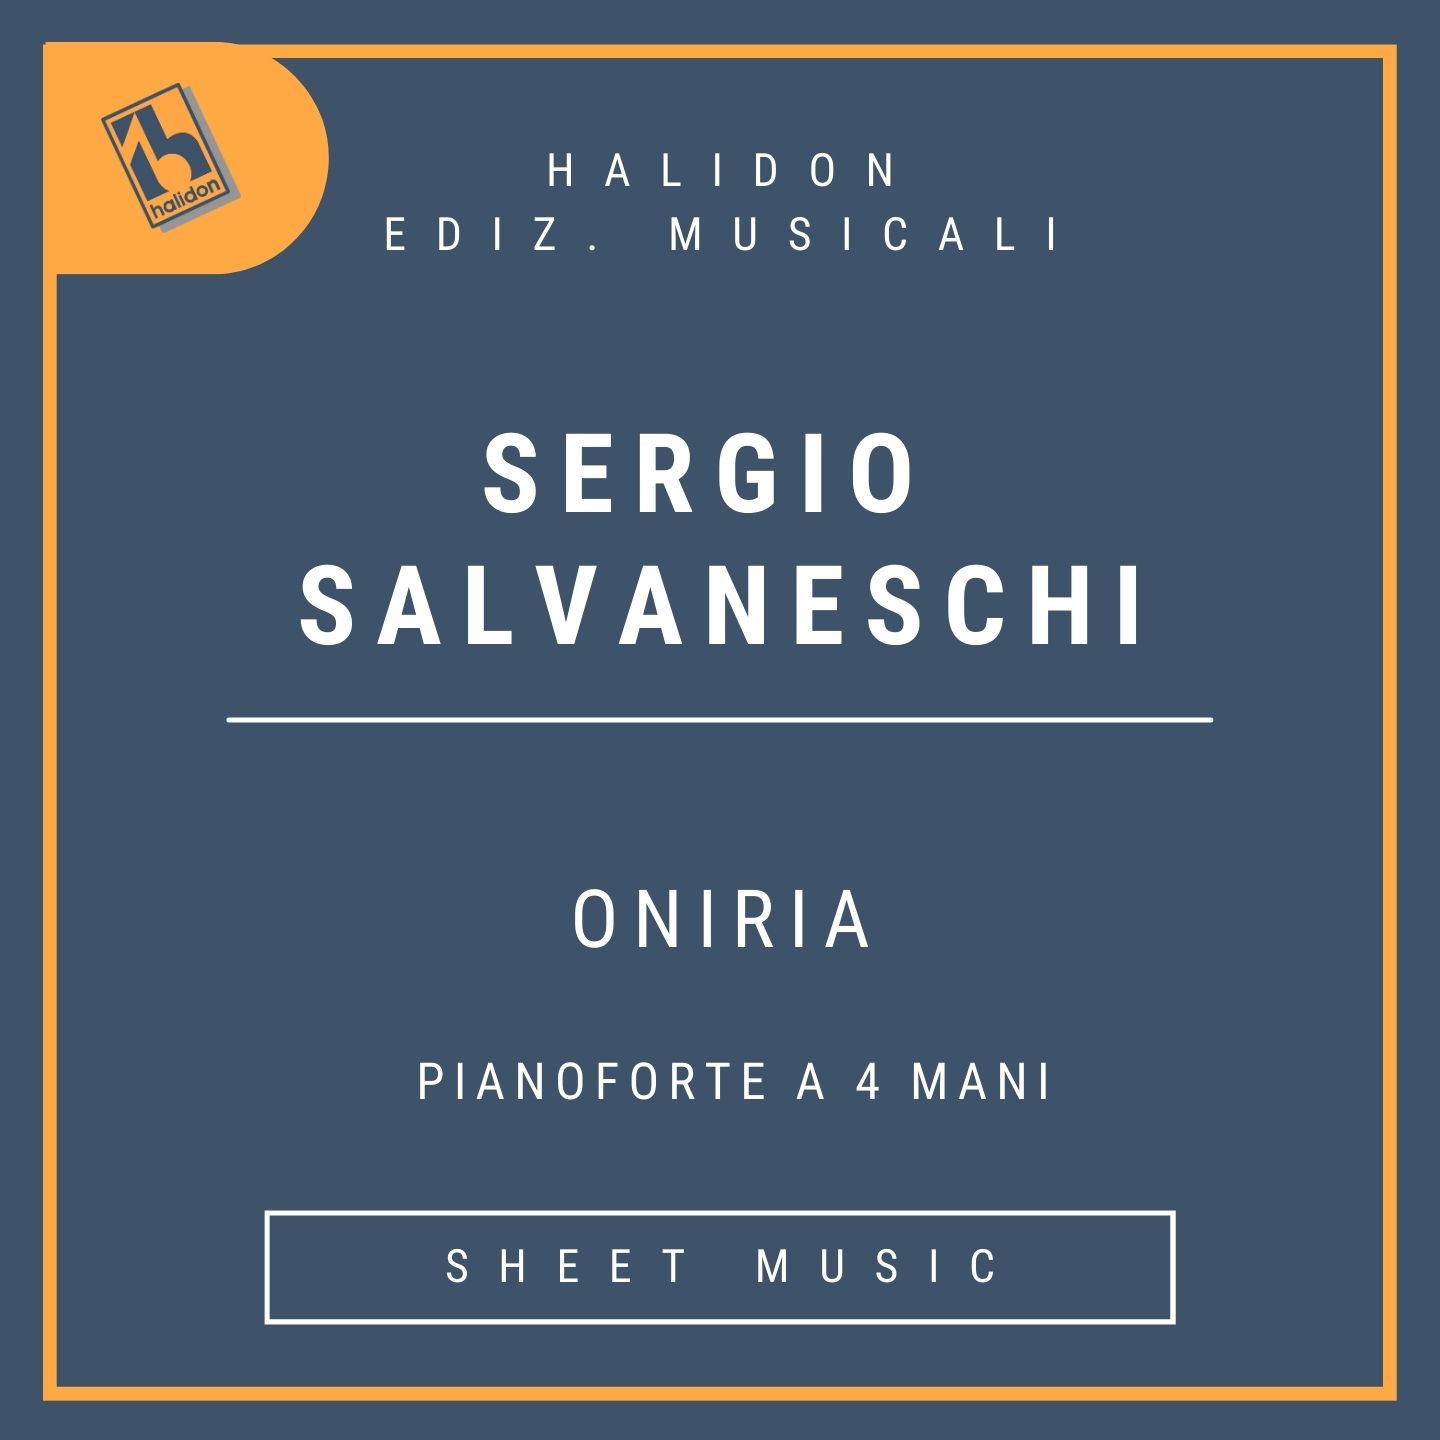 Oniria - pianoforte a 4 mani